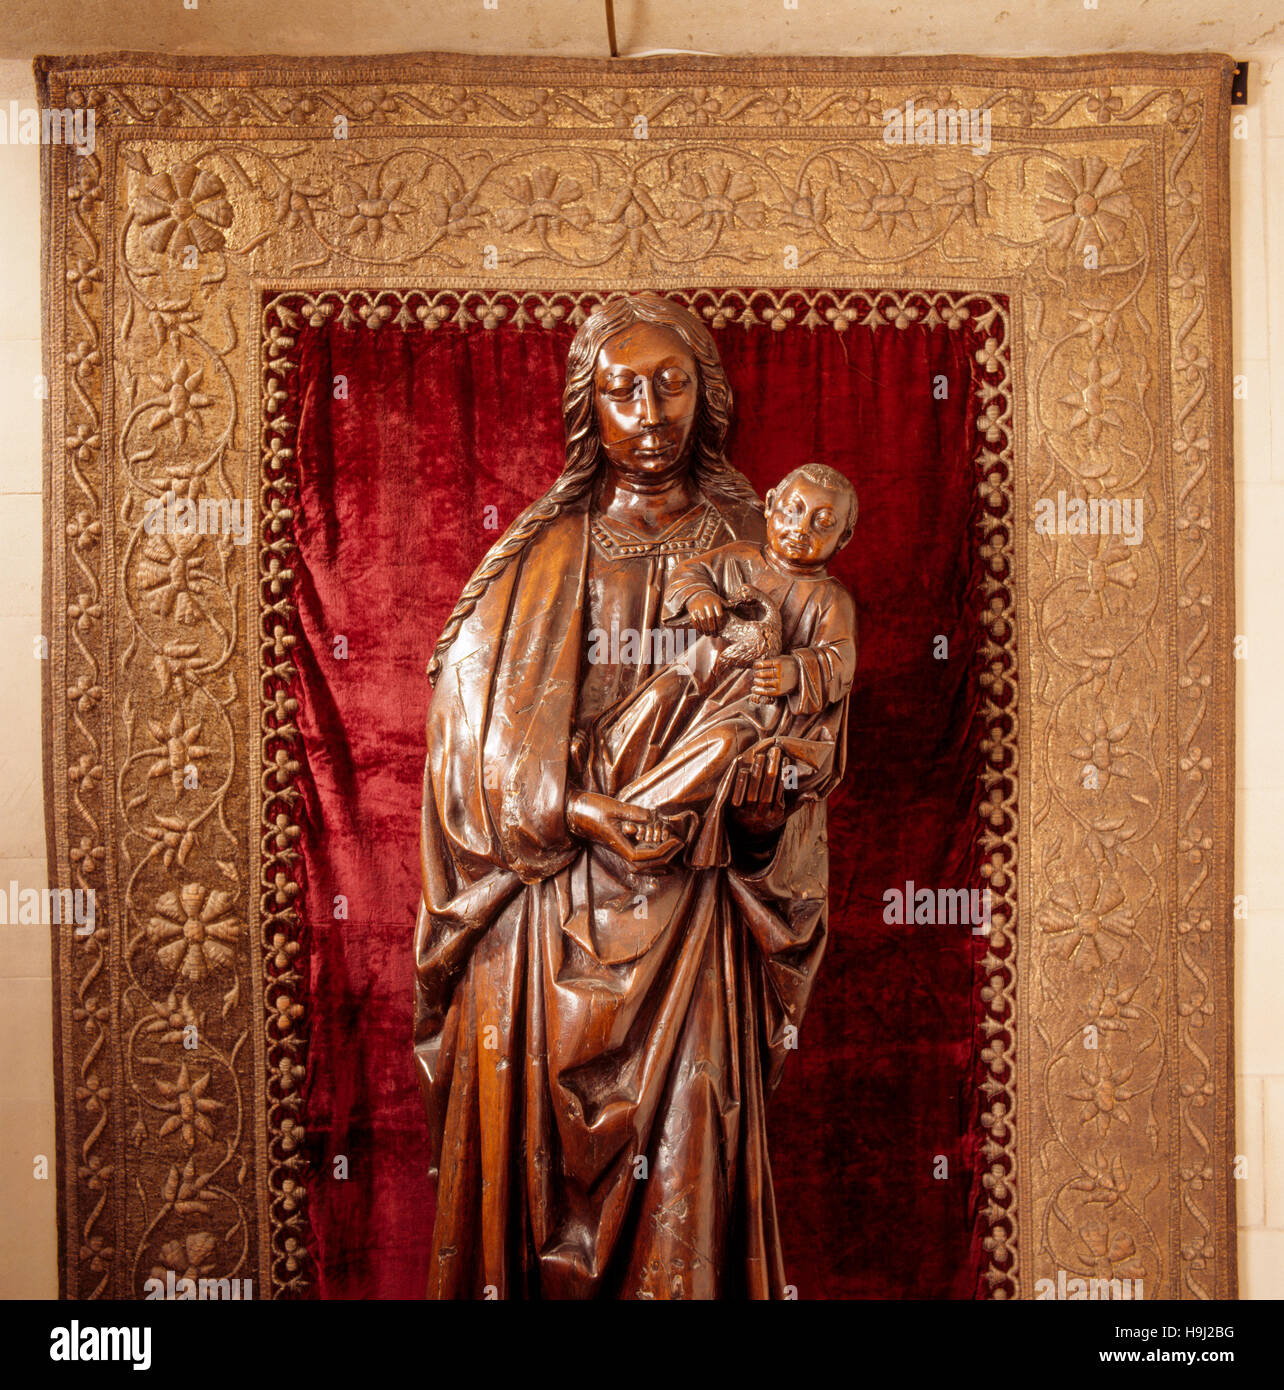 Dans la longue galerie, près de life-size en bois sculpté la figure de la Vierge à l'enfant dans l'image, dans l'alcôve. Il a été sculpté dans le Nord de l'Europe dans le Comte Banque D'Images